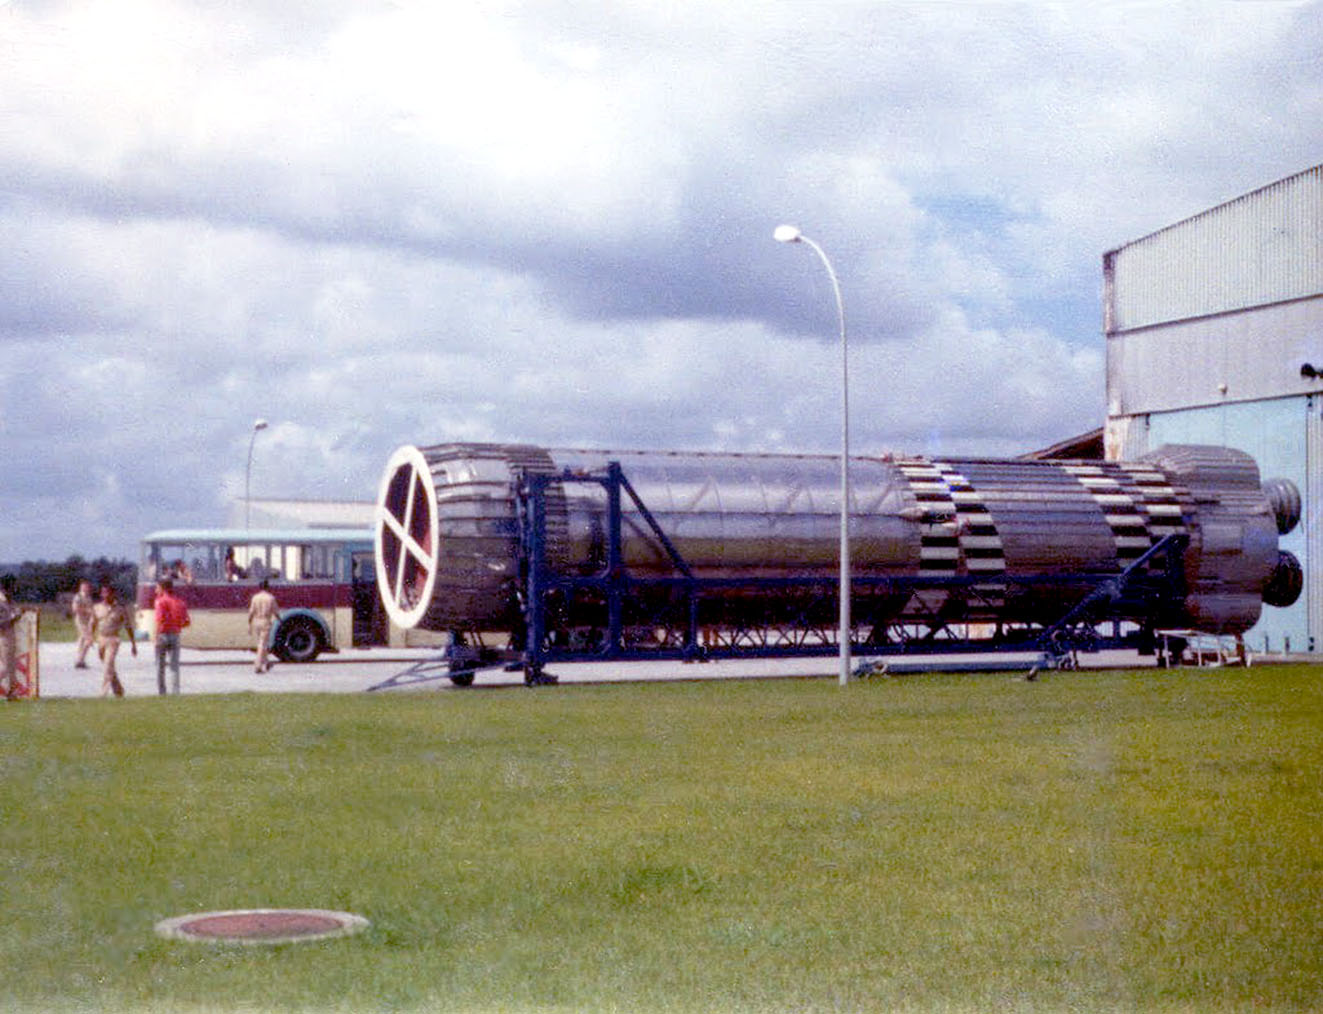 le premier étage d'Europa F-12 devant le hangar de préparation à Kourou en mai 1973 alors que le CECLES-ELDO est dissous suite à l'arrêt du programme Europa 2 lors du conseil du 27 avril à Paris